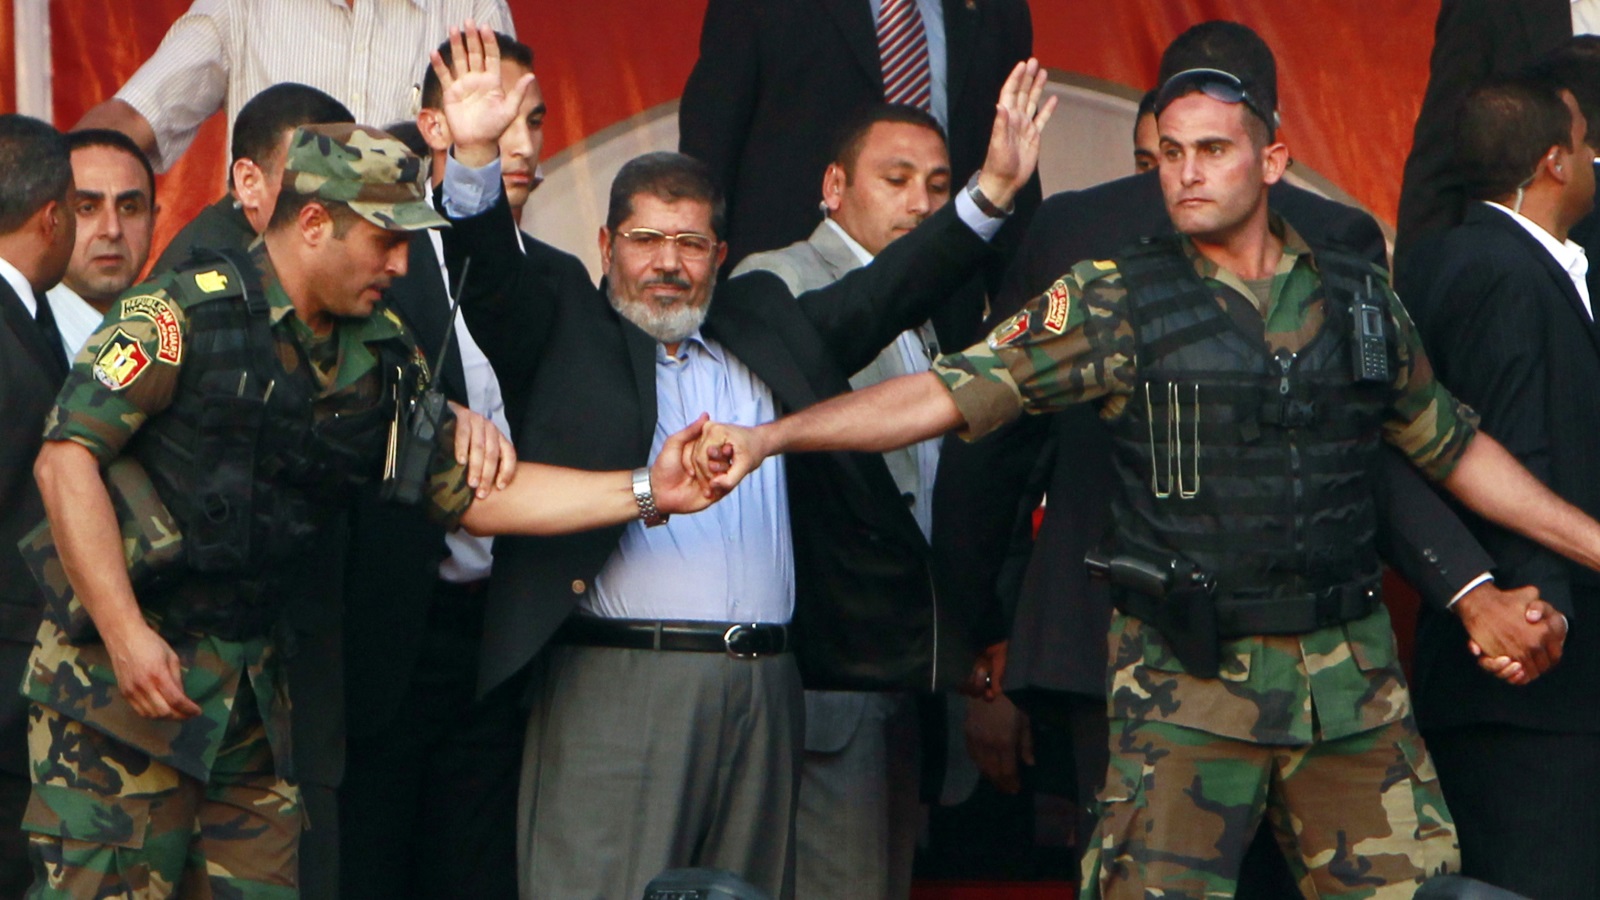 عندما صعد مرسي إلى السلطة، قال على الفور إنّ كلّ شيء غُفر ونُسي؛ لأنّ الأمن قد أصلح نفسه، وحتى قبل أن يُطاح به أعلنَ أنّ الأمن كان شريكاً في الثورة